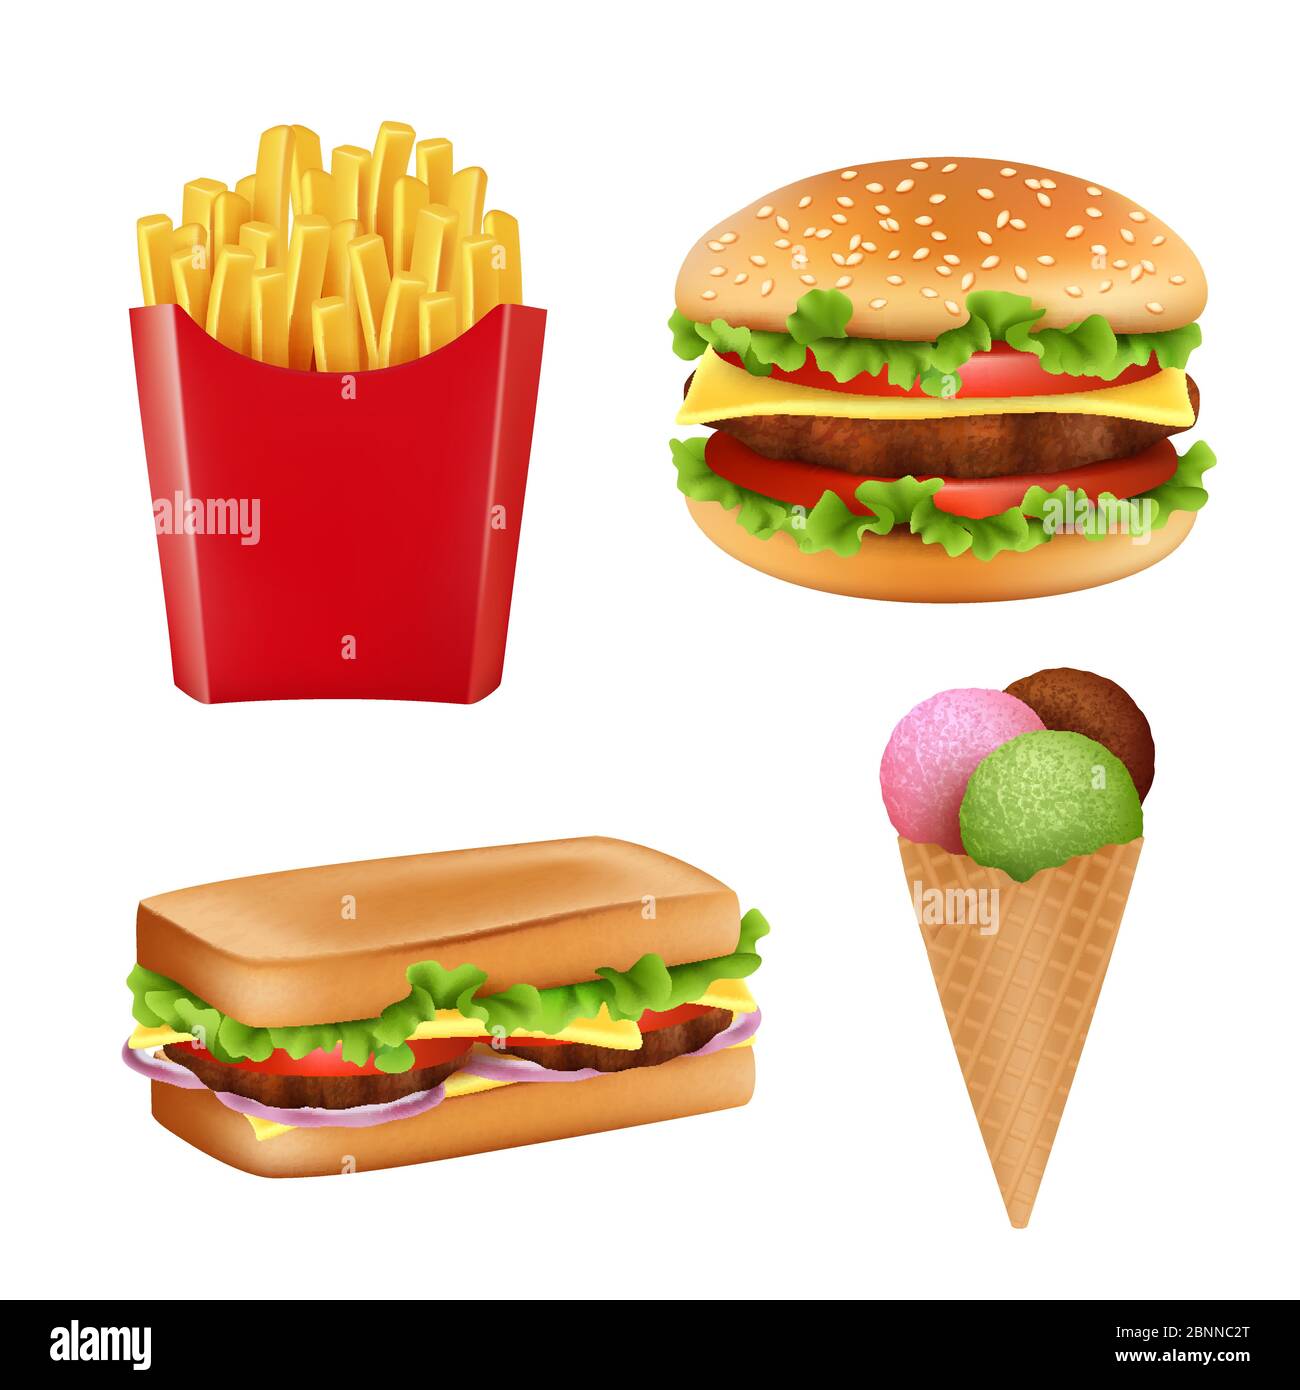 Immagini di fast food. Hamburger sandwich fritte icecream e bevande fredde pane 3d realistico vettore illustrazioni isolato Illustrazione Vettoriale